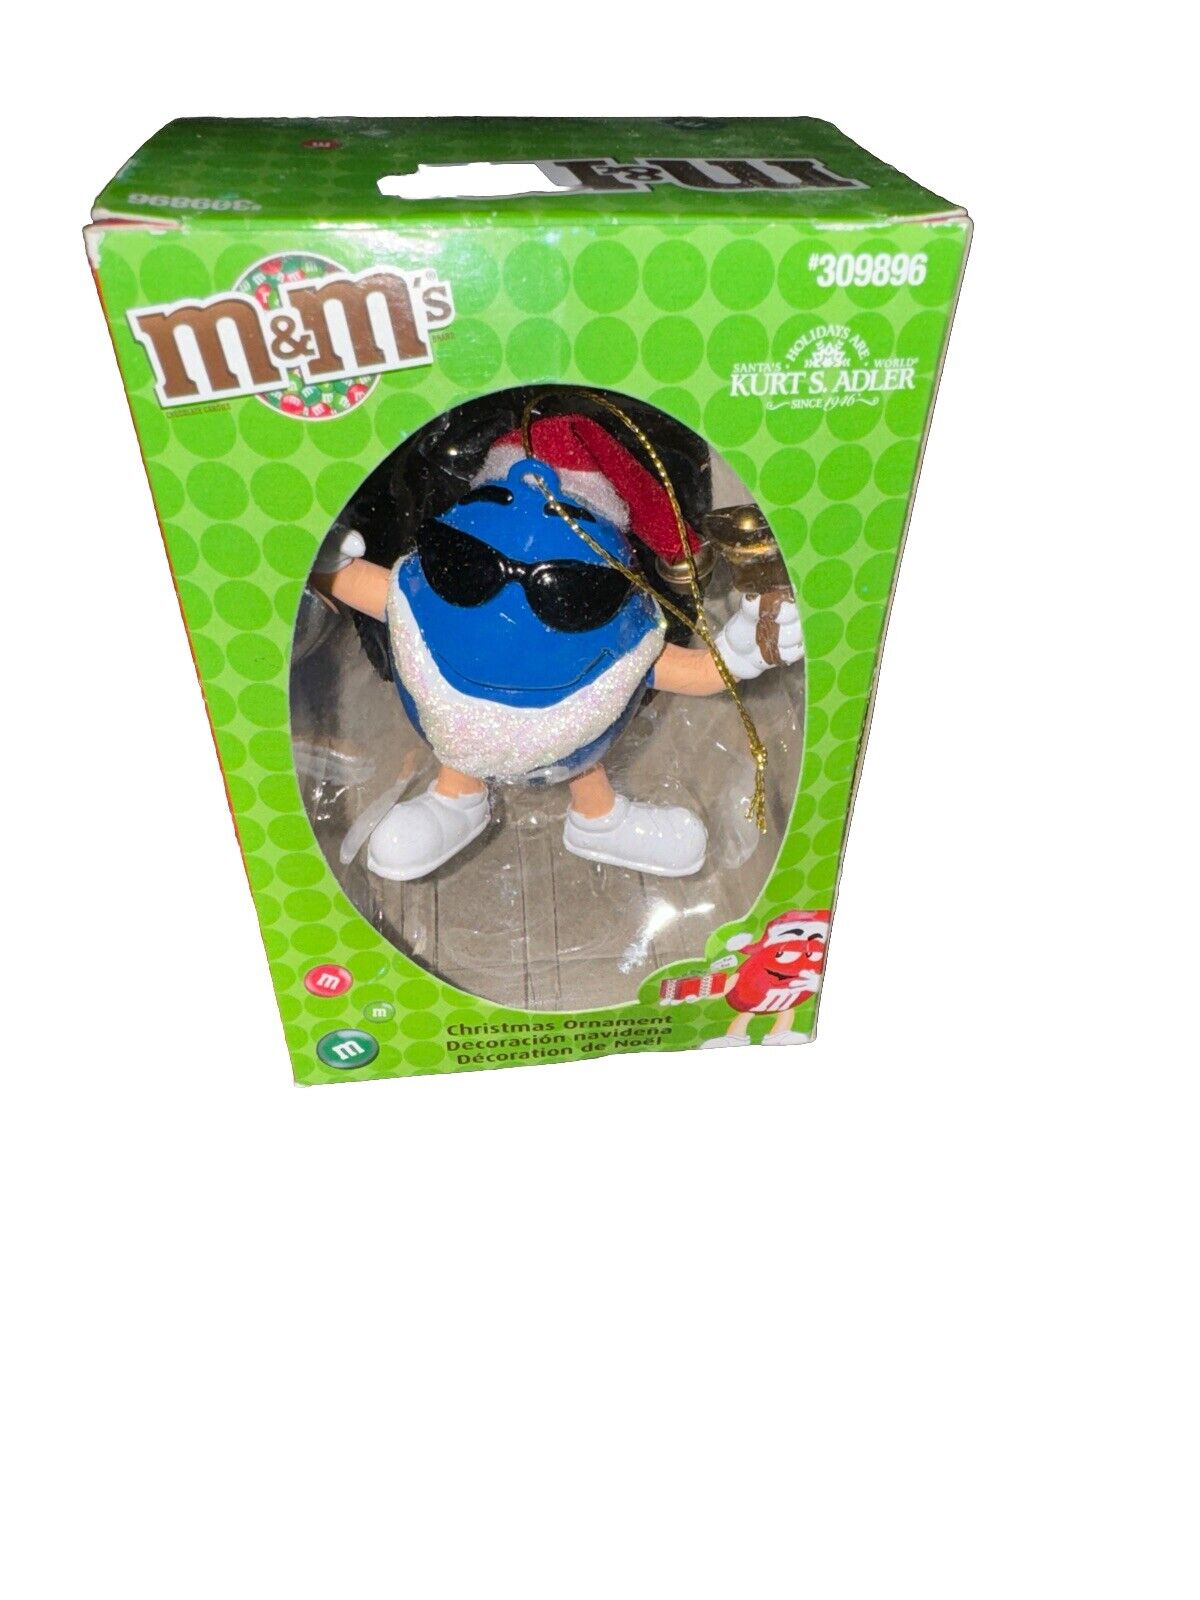 M&M’s Kurt S. Adler Blue M&M Christmas Ornaments 